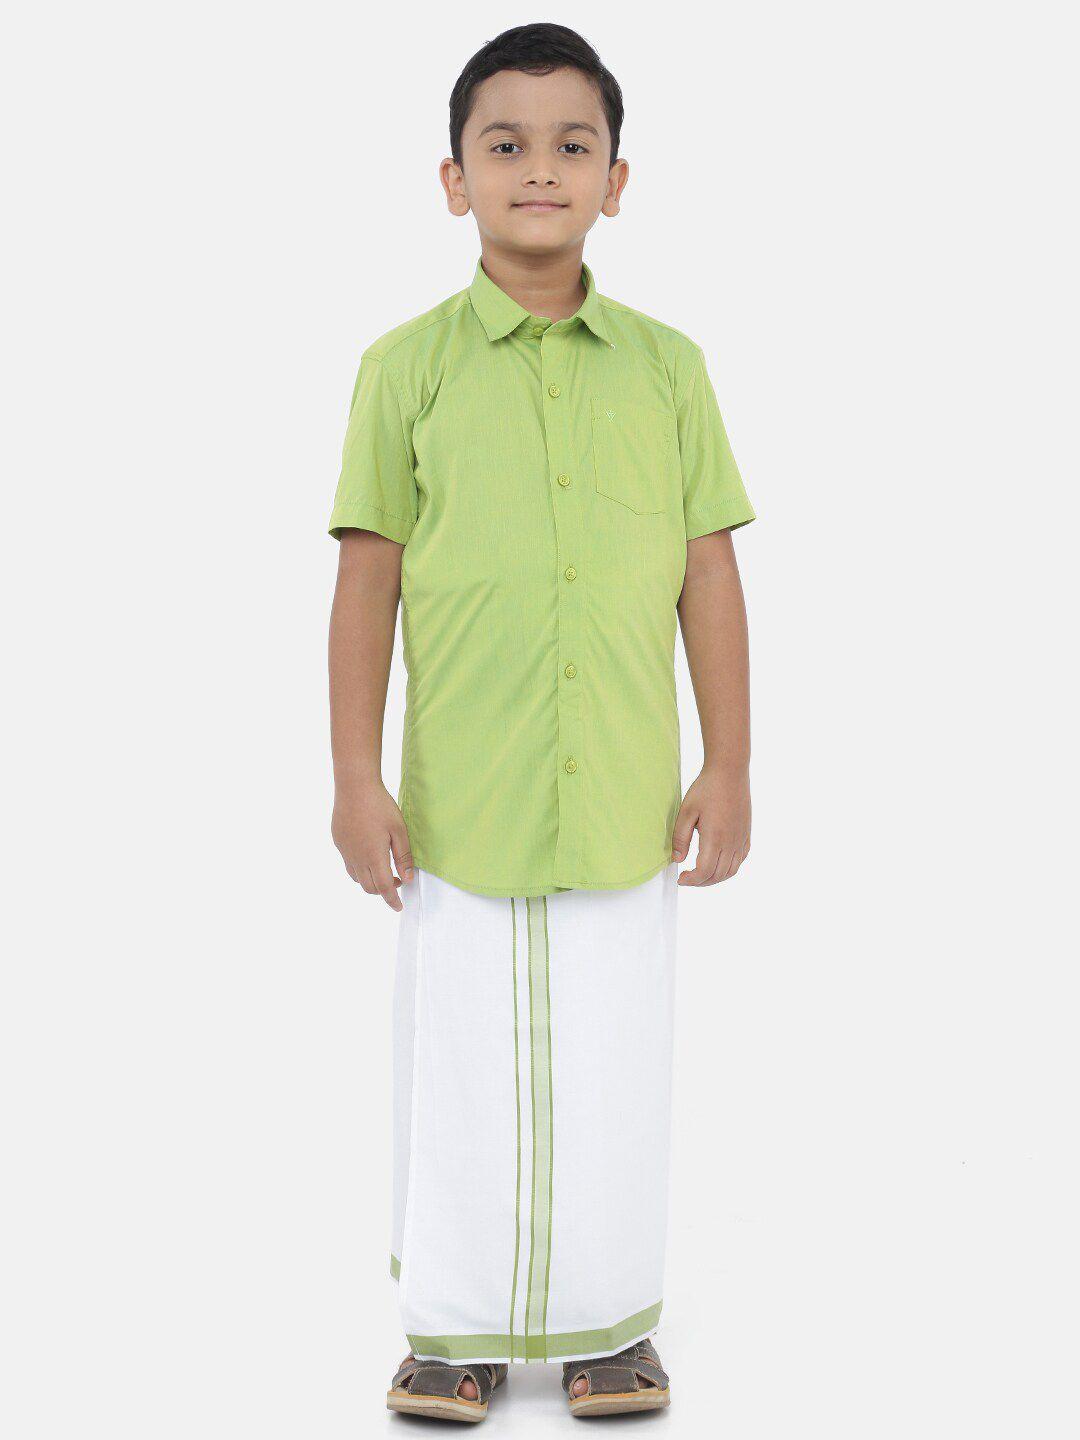 littlestars boys green & white shirt with dhoti